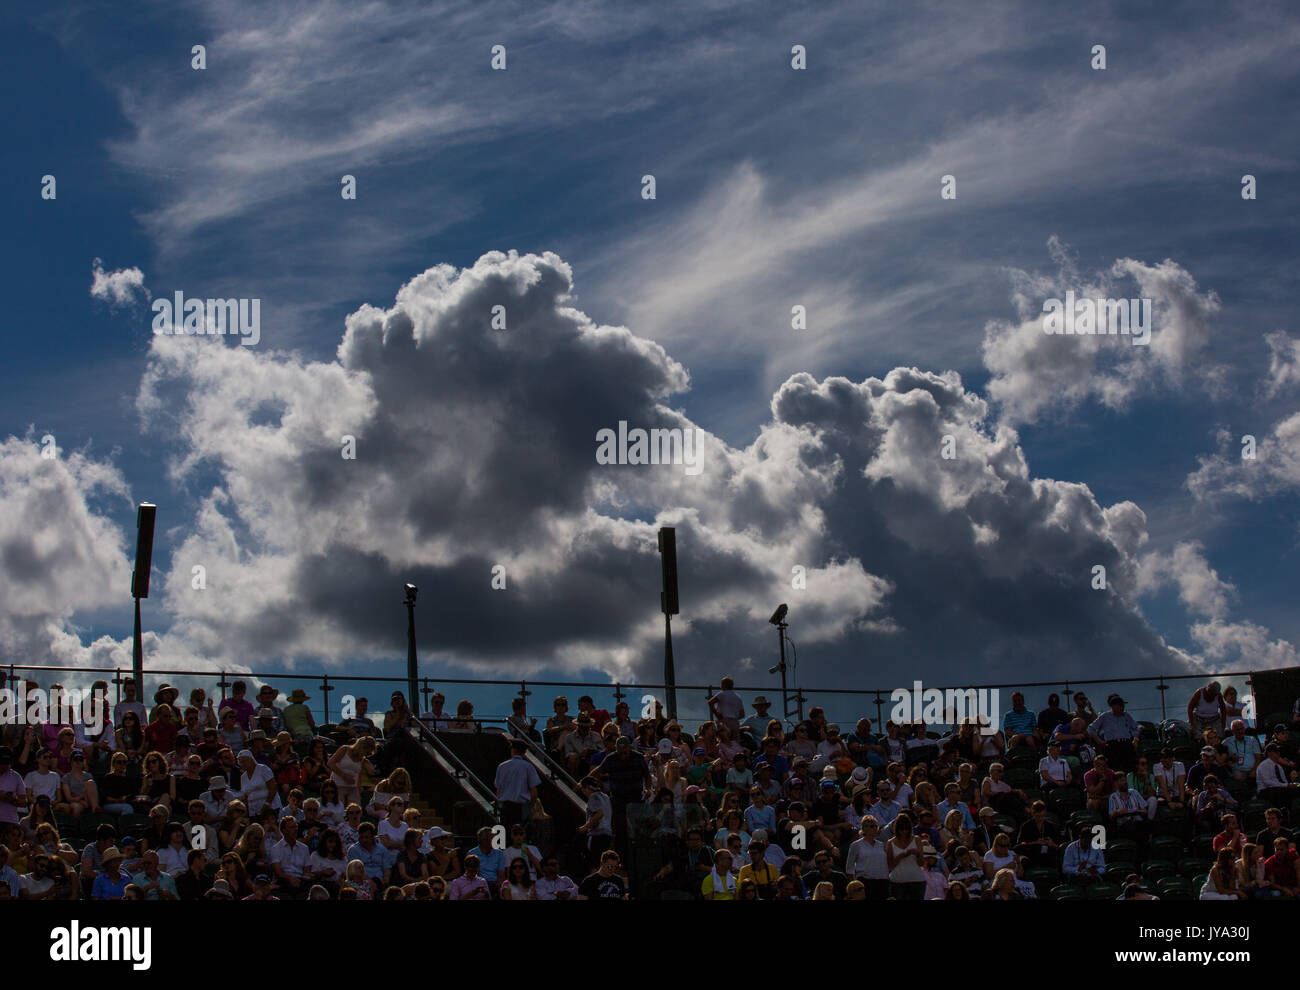 Gli spettatori seduti courtside a campionati di Wimbledon 2017, nuvole scure si raccolgono sul terreno, Londra, Gran Bretagna, Regno Unito. Foto Stock